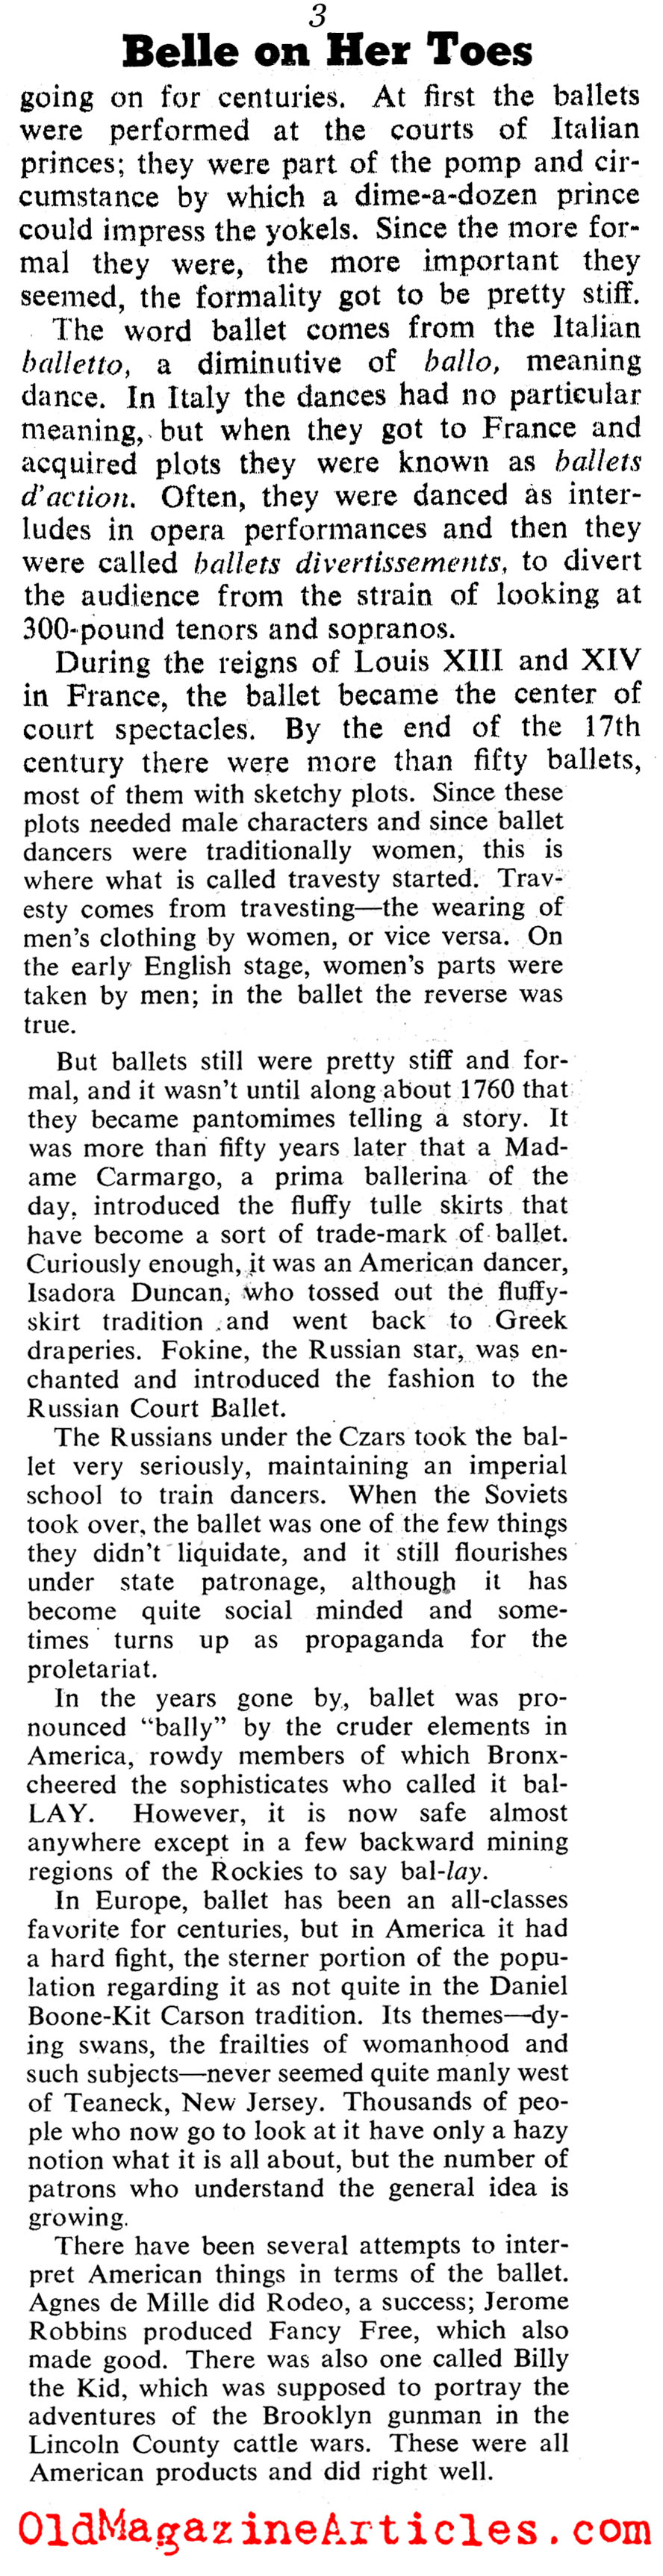 Dancer Mia Slavenska (Collier's Magazine, 1945)